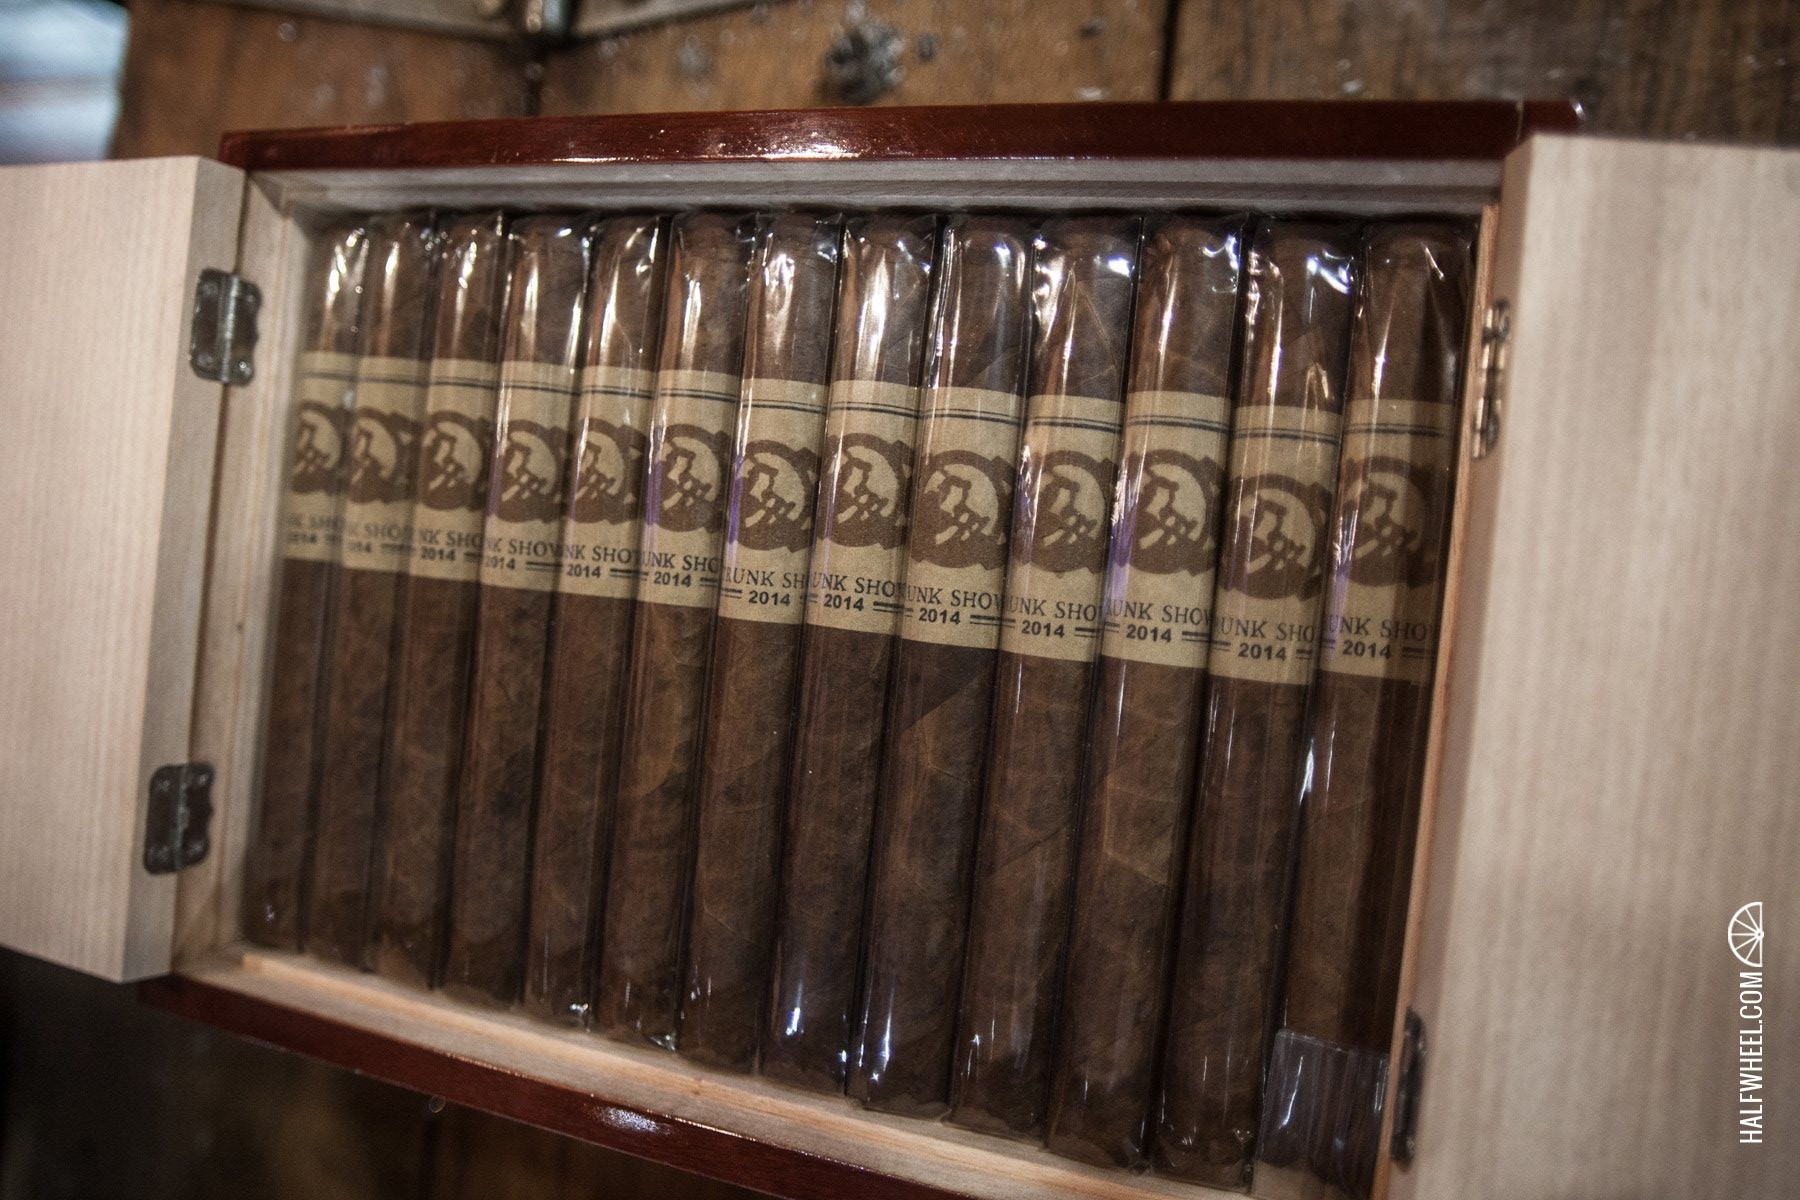 General Cigar IPCPR 2014-10